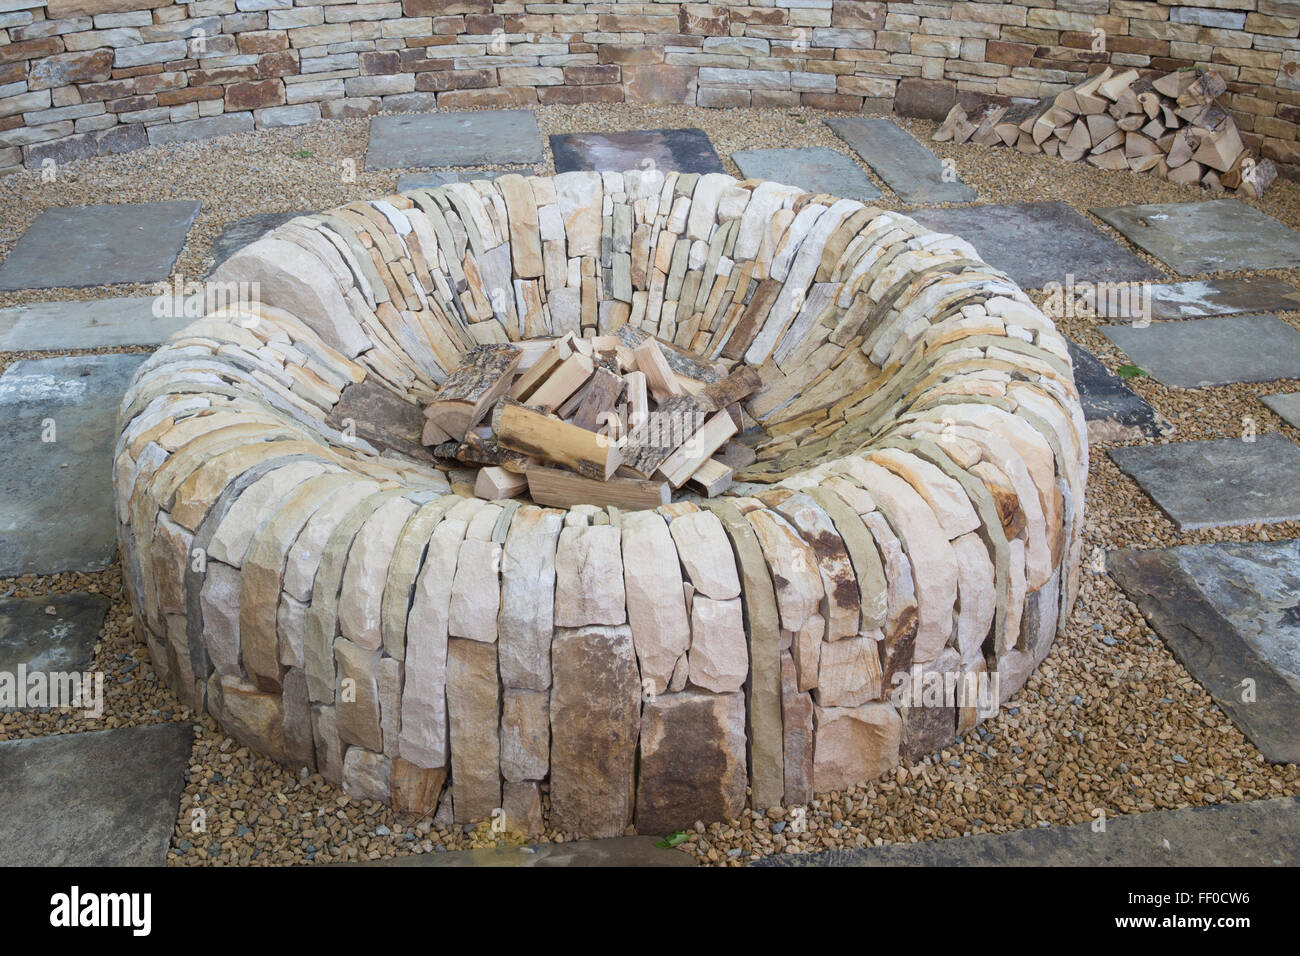 Jardin avec une fosse à feu circulaire faite de pierre dans un gravier et pavé de pierre patio zone Royaume-Uni Banque D'Images